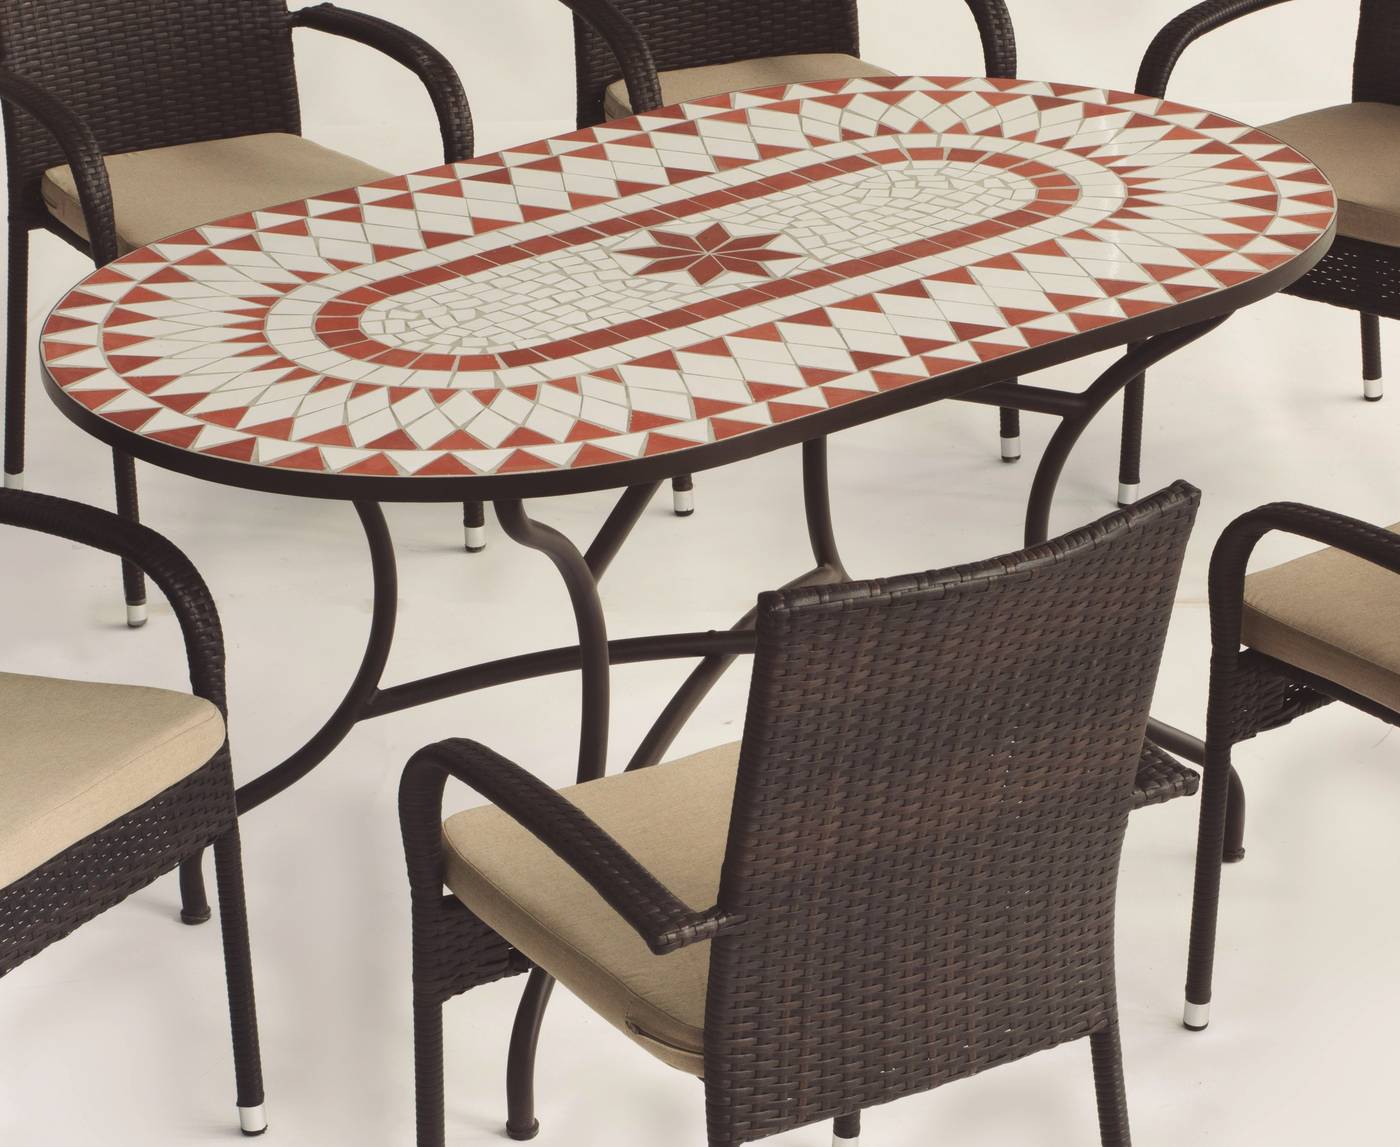 Conjunto Mosaico Neypal150-Bergamo - Conjunto de forja color bronce: mesa con tablero mosaico de 150 cm + 6 sillones con cojines asiento.